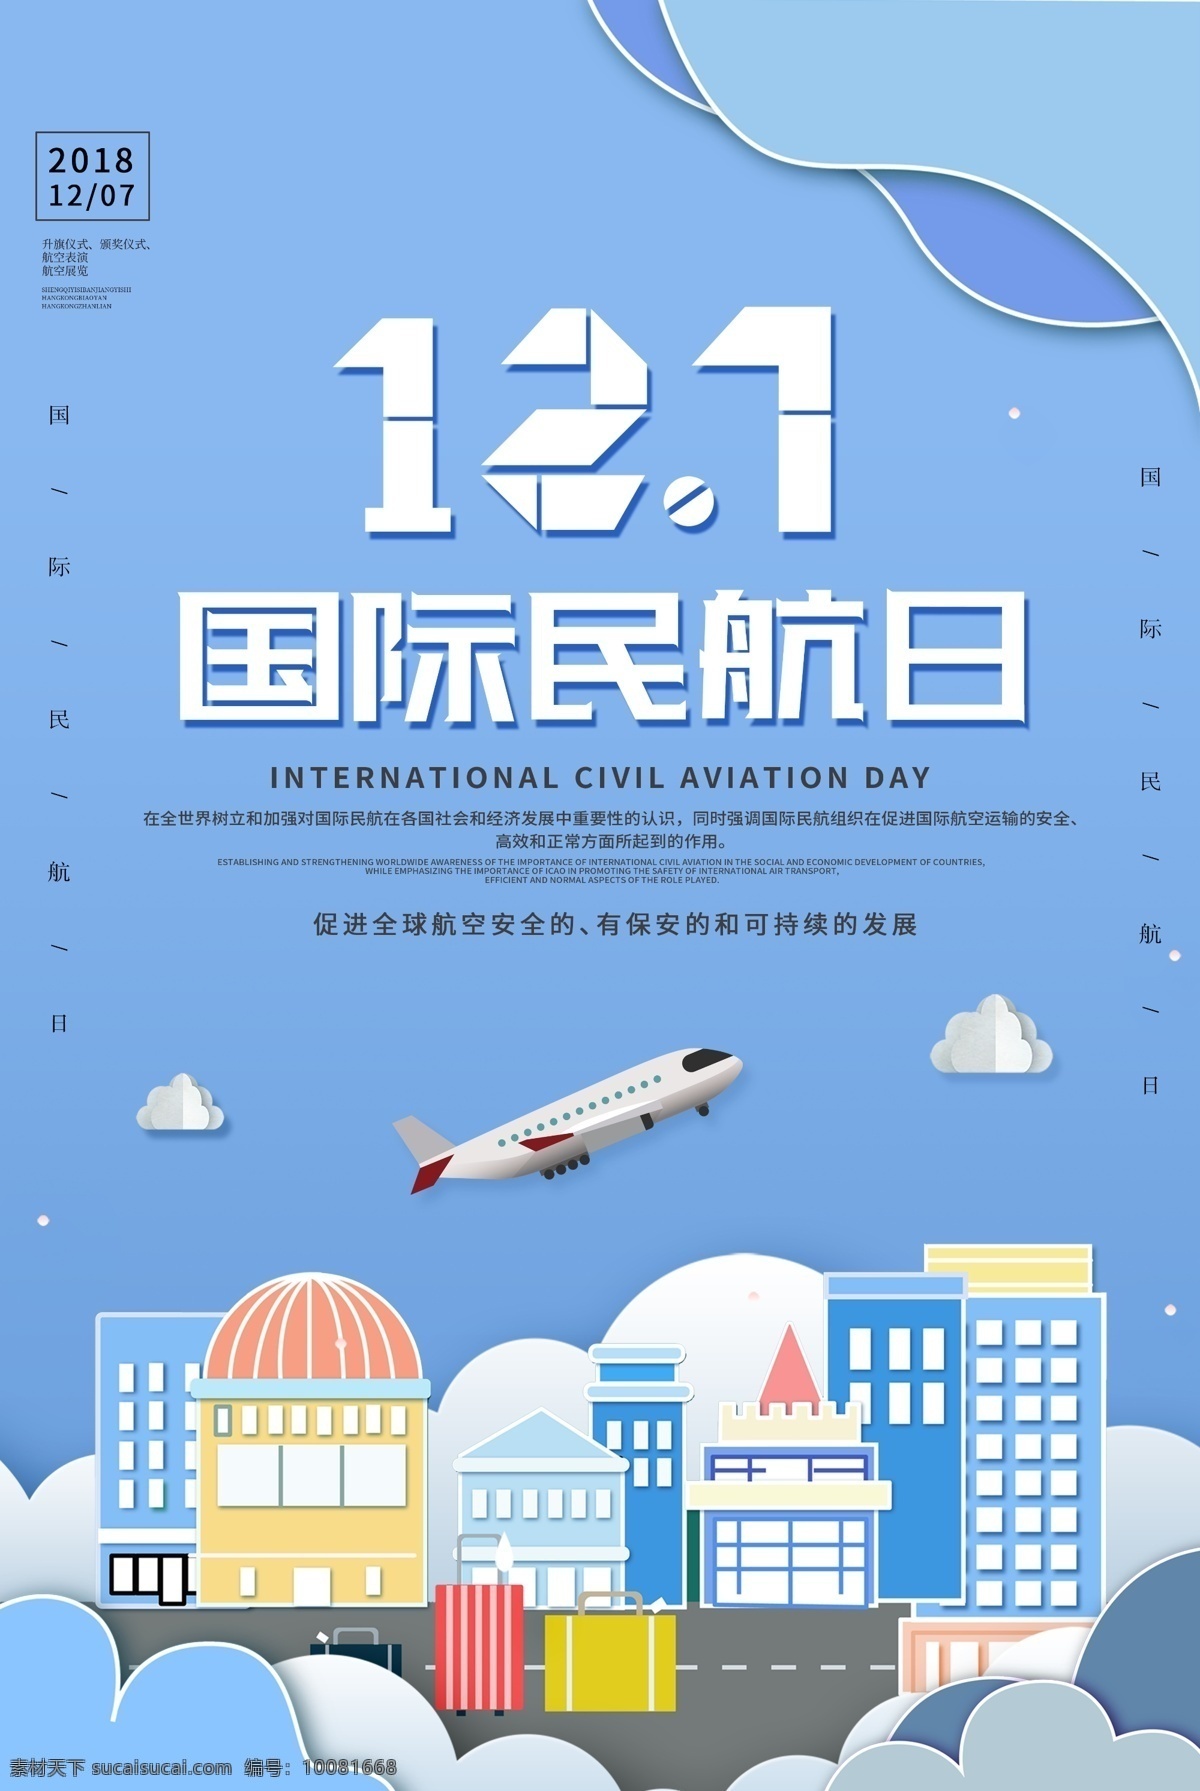 剪纸 风格 国际 民航 日 海报 国际民航日 12月7号 航班 飞机 剪纸城市 民航日